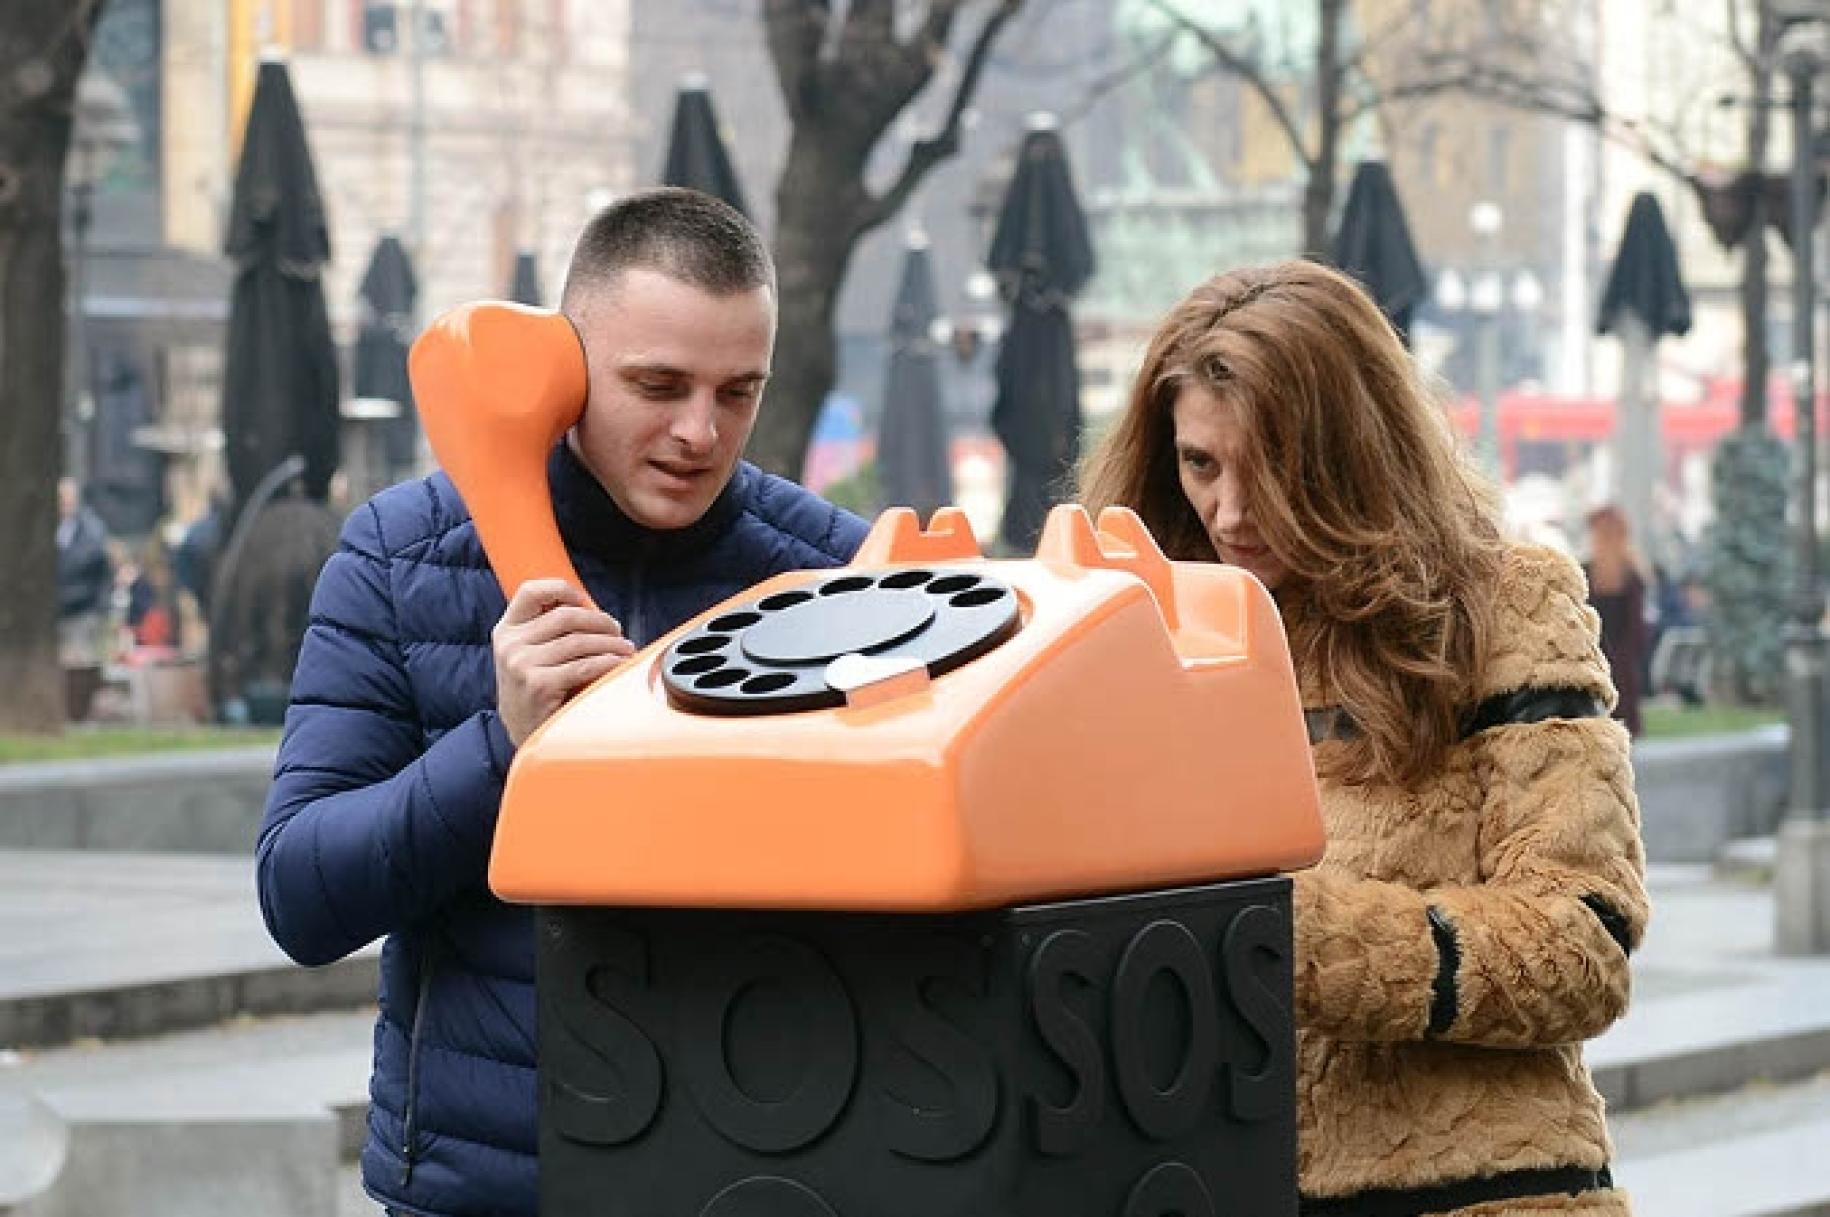 رجل وامرأة يقفان بجوار هاتف برتقالي كبير بينما يمسك الرجل السماعة.